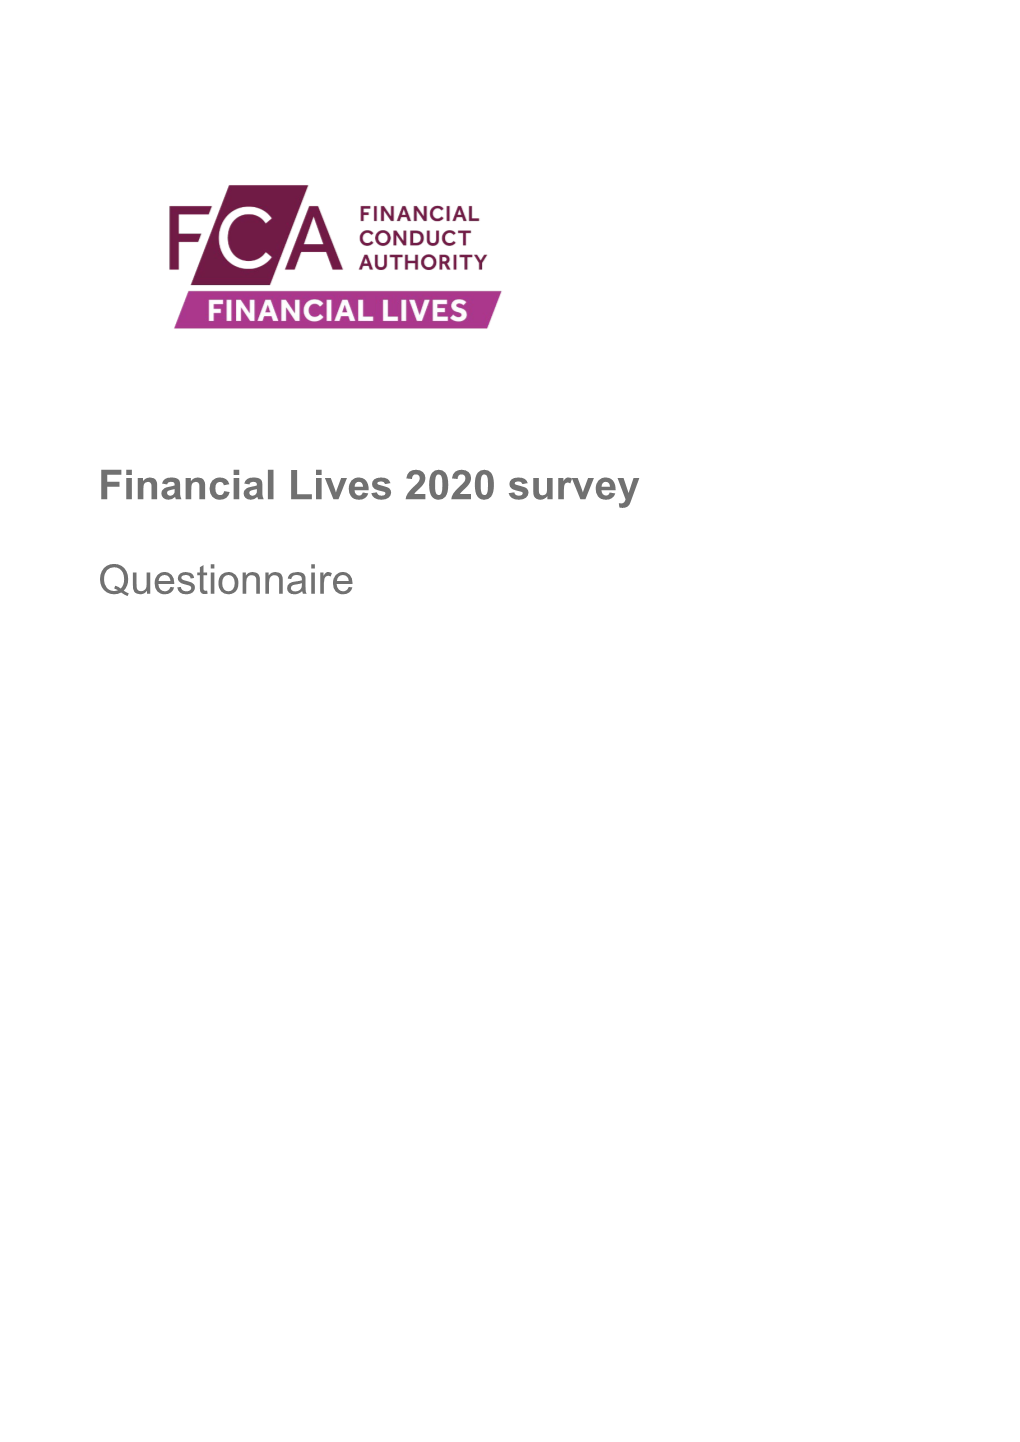 Financial Lives 2020 Survey: Questionnaire